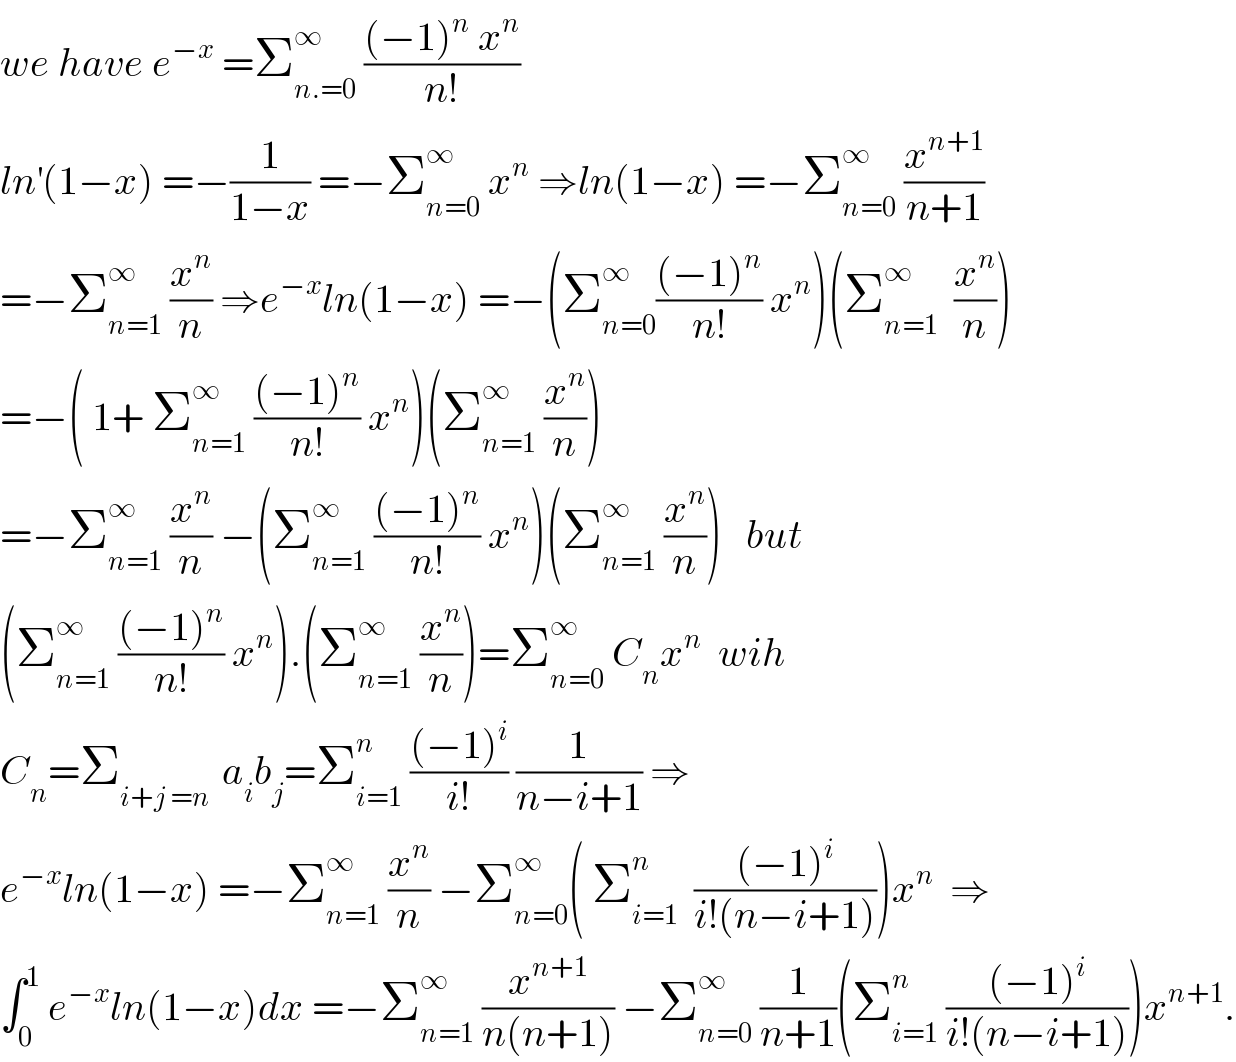 we have e^(−x)  =Σ_(n.=0) ^∞  (((−1)^n  x^n )/(n!))  ln^′ (1−x) =−(1/(1−x)) =−Σ_(n=0) ^∞  x^n  ⇒ln(1−x) =−Σ_(n=0) ^∞  (x^(n+1) /(n+1))  =−Σ_(n=1) ^∞  (x^n /n) ⇒e^(−x) ln(1−x) =−(Σ_(n=0) ^∞ (((−1)^n )/(n!)) x^n )(Σ_(n=1) ^∞   (x^n /n))  =−( 1+ Σ_(n=1) ^∞  (((−1)^n )/(n!)) x^n )(Σ_(n=1) ^∞  (x^n /n))  =−Σ_(n=1) ^∞  (x^n /n) −(Σ_(n=1) ^∞  (((−1)^n )/(n!)) x^n )(Σ_(n=1) ^∞  (x^n /n))   but   (Σ_(n=1) ^∞  (((−1)^n )/(n!)) x^n ).(Σ_(n=1) ^∞  (x^n /n))=Σ_(n=0) ^∞  C_n x^n   wih  C_n =Σ_(i+j =n )  a_i b_j =Σ_(i=1) ^n  (((−1)^i )/(i!)) (1/(n−i+1)) ⇒  e^(−x) ln(1−x) =−Σ_(n=1) ^∞  (x^n /n) −Σ_(n=0) ^∞ ( Σ_(i=1) ^n   (((−1)^i )/(i!(n−i+1))))x^n   ⇒  ∫_0 ^1  e^(−x) ln(1−x)dx =−Σ_(n=1) ^∞  (x^(n+1) /(n(n+1))) −Σ_(n=0) ^∞  (1/(n+1))(Σ_(i=1) ^n  (((−1)^i )/(i!(n−i+1))))x^(n+1) .  